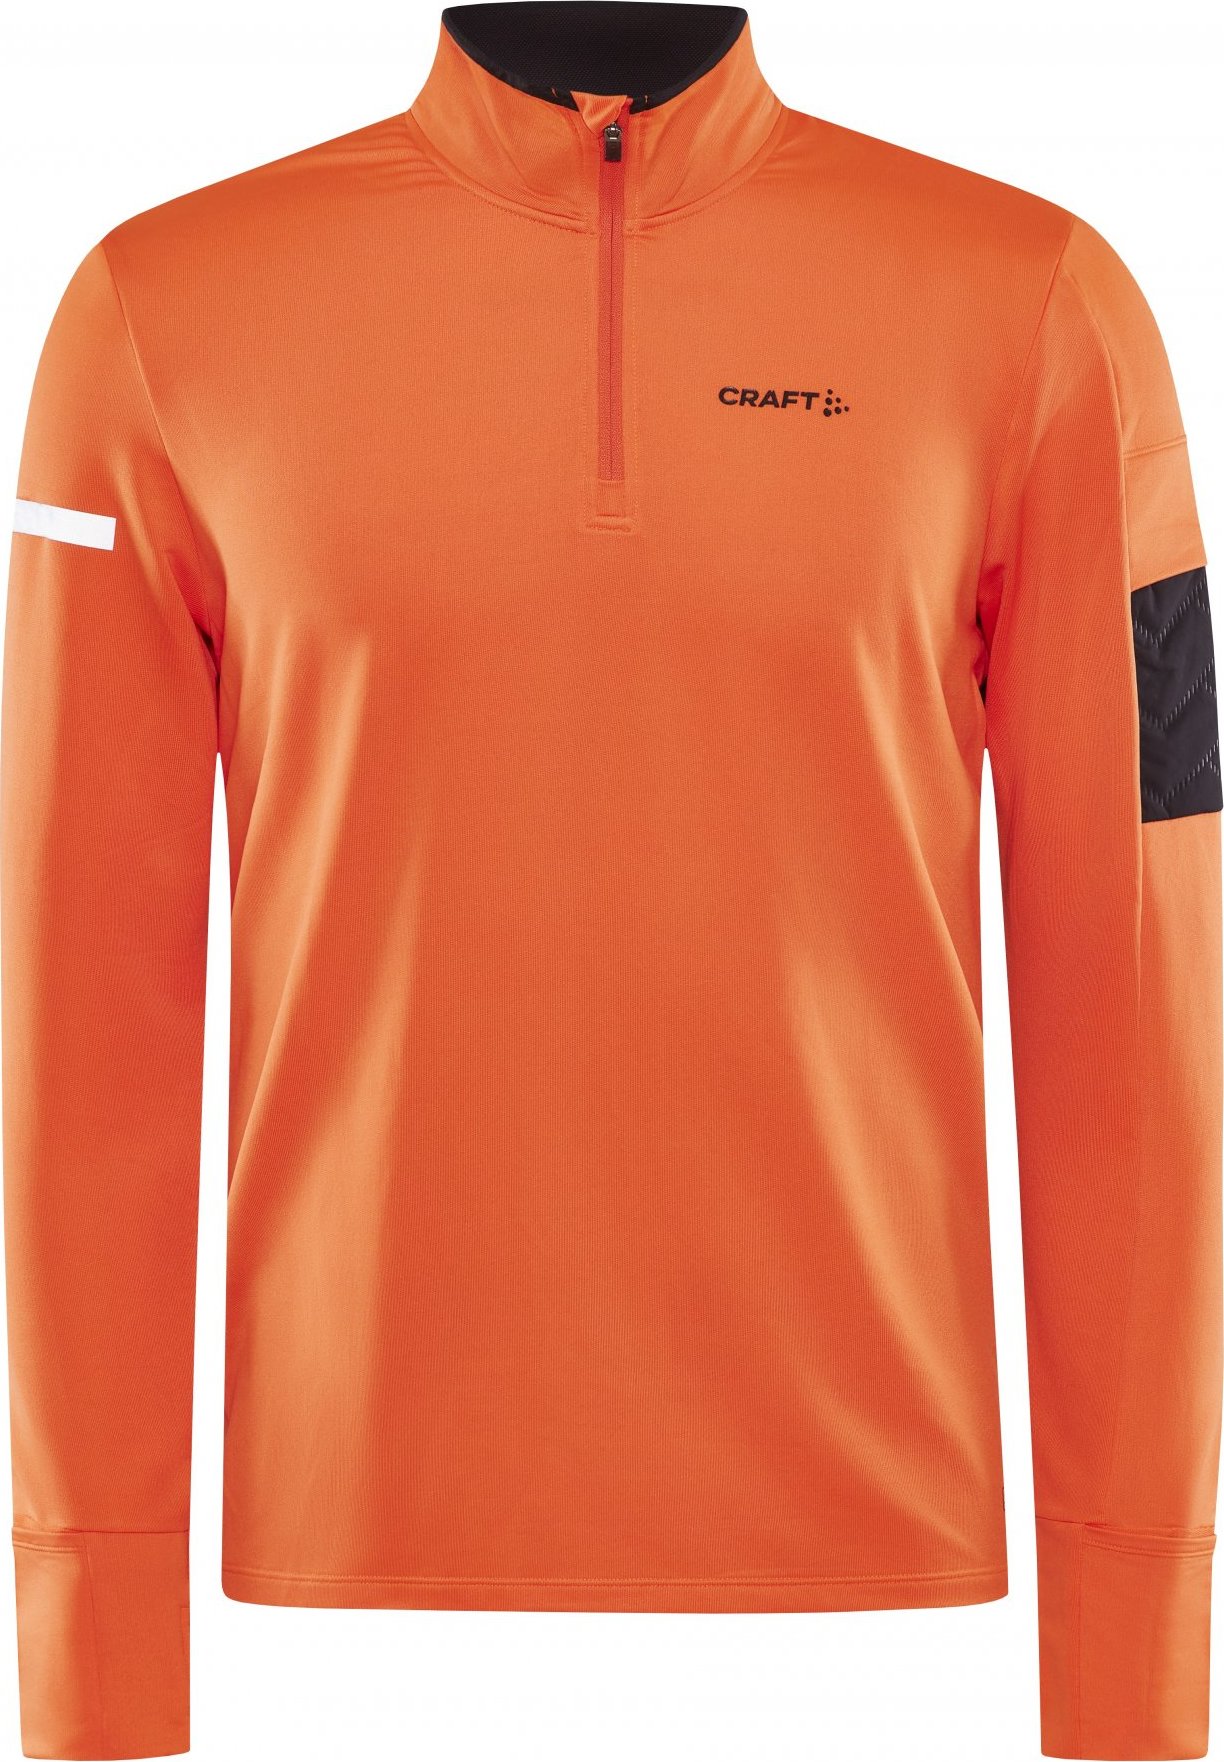 Pánské běžecké triko CRAFT Adv Subz Ls 2 oranžové Velikost: S